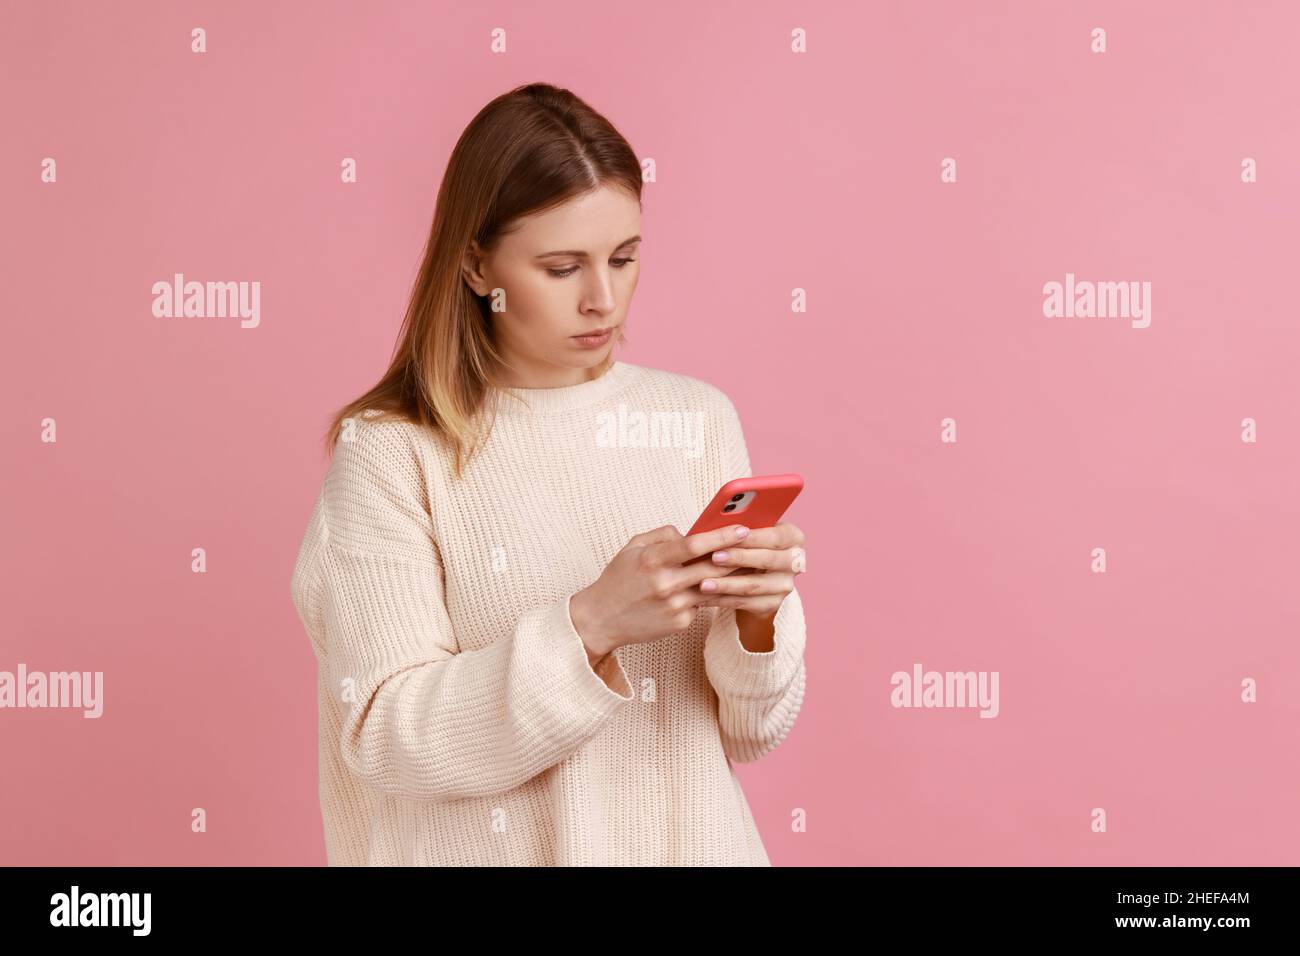 Porträt einer ernsthaft konzentrierten attraktiven blonden Frau, die Mobiltelefon benutzt, auf den Bildschirm des Geräts schaut, eine Nachricht tippt, einen weißen Pullover trägt. Innenaufnahme des Studios isoliert auf rosa Hintergrund. Stockfoto